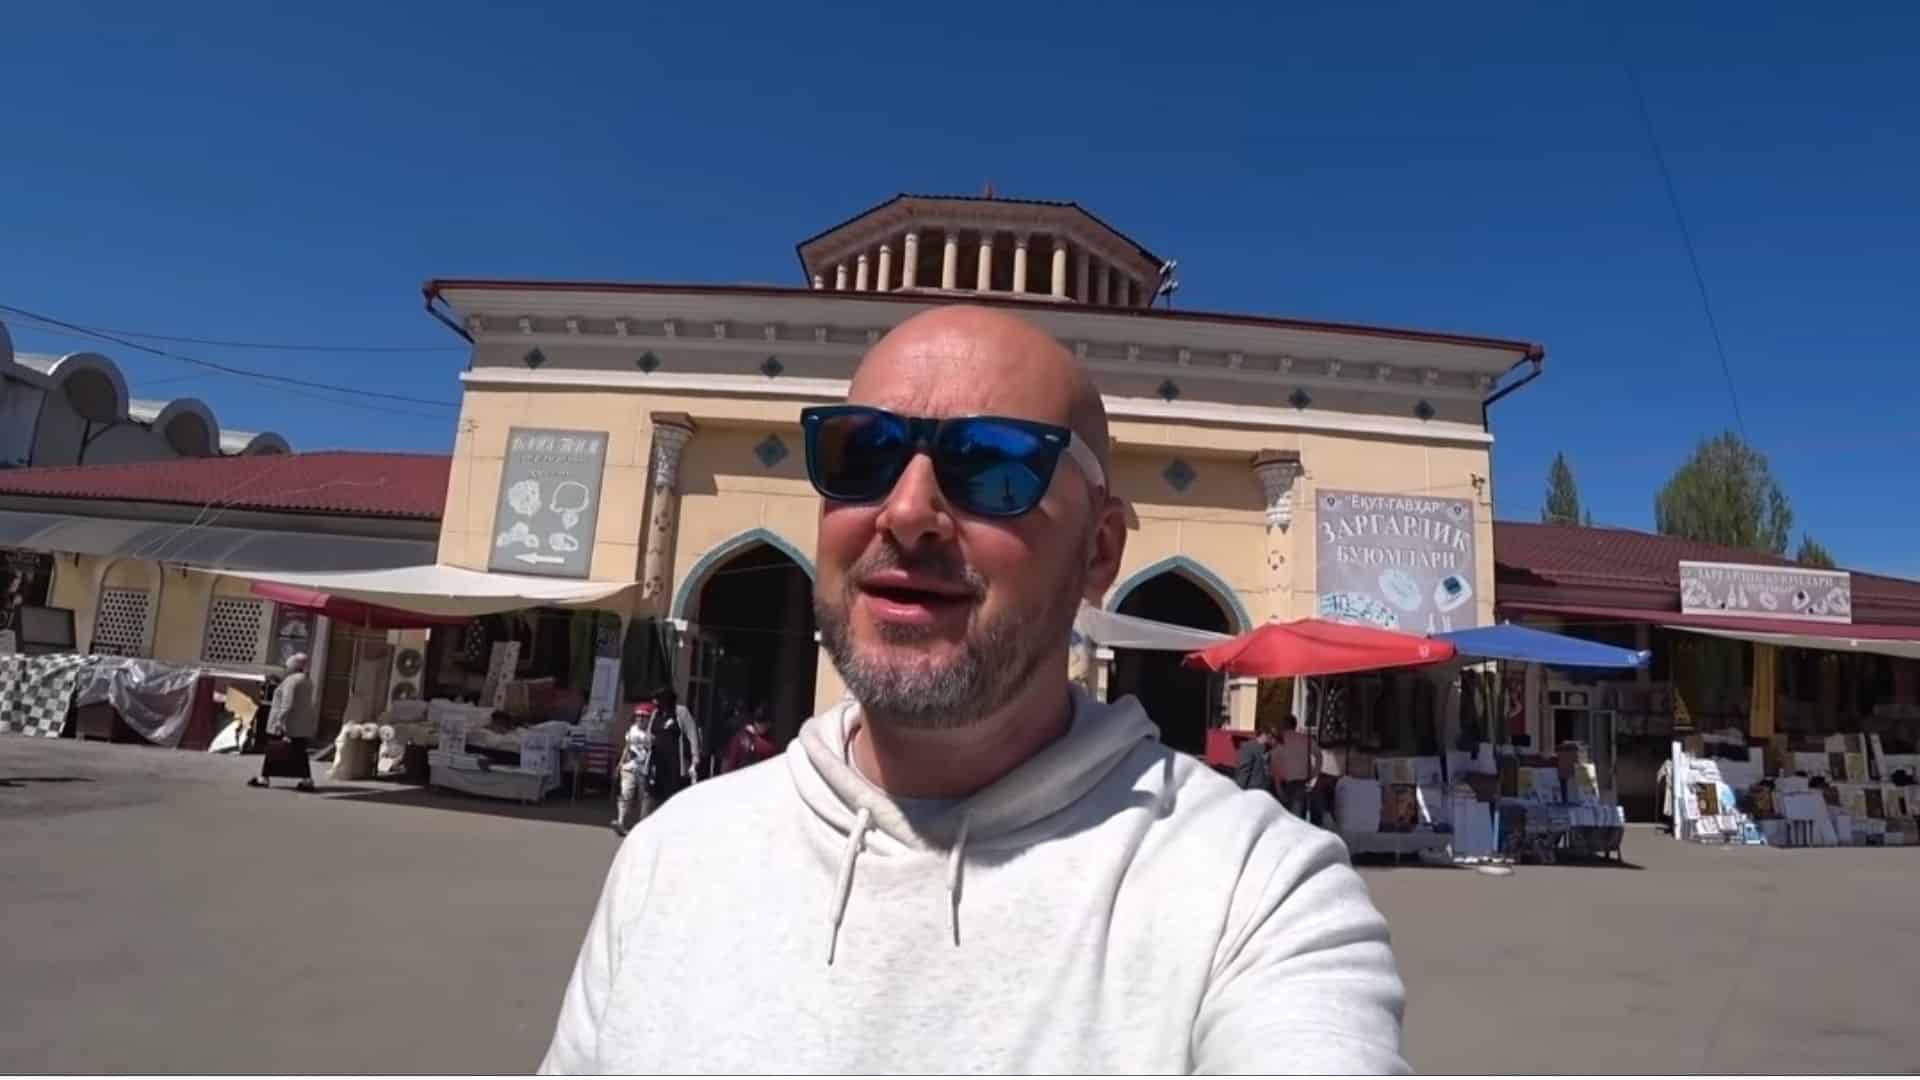 YouTuber Bald and Bankrupt at a market